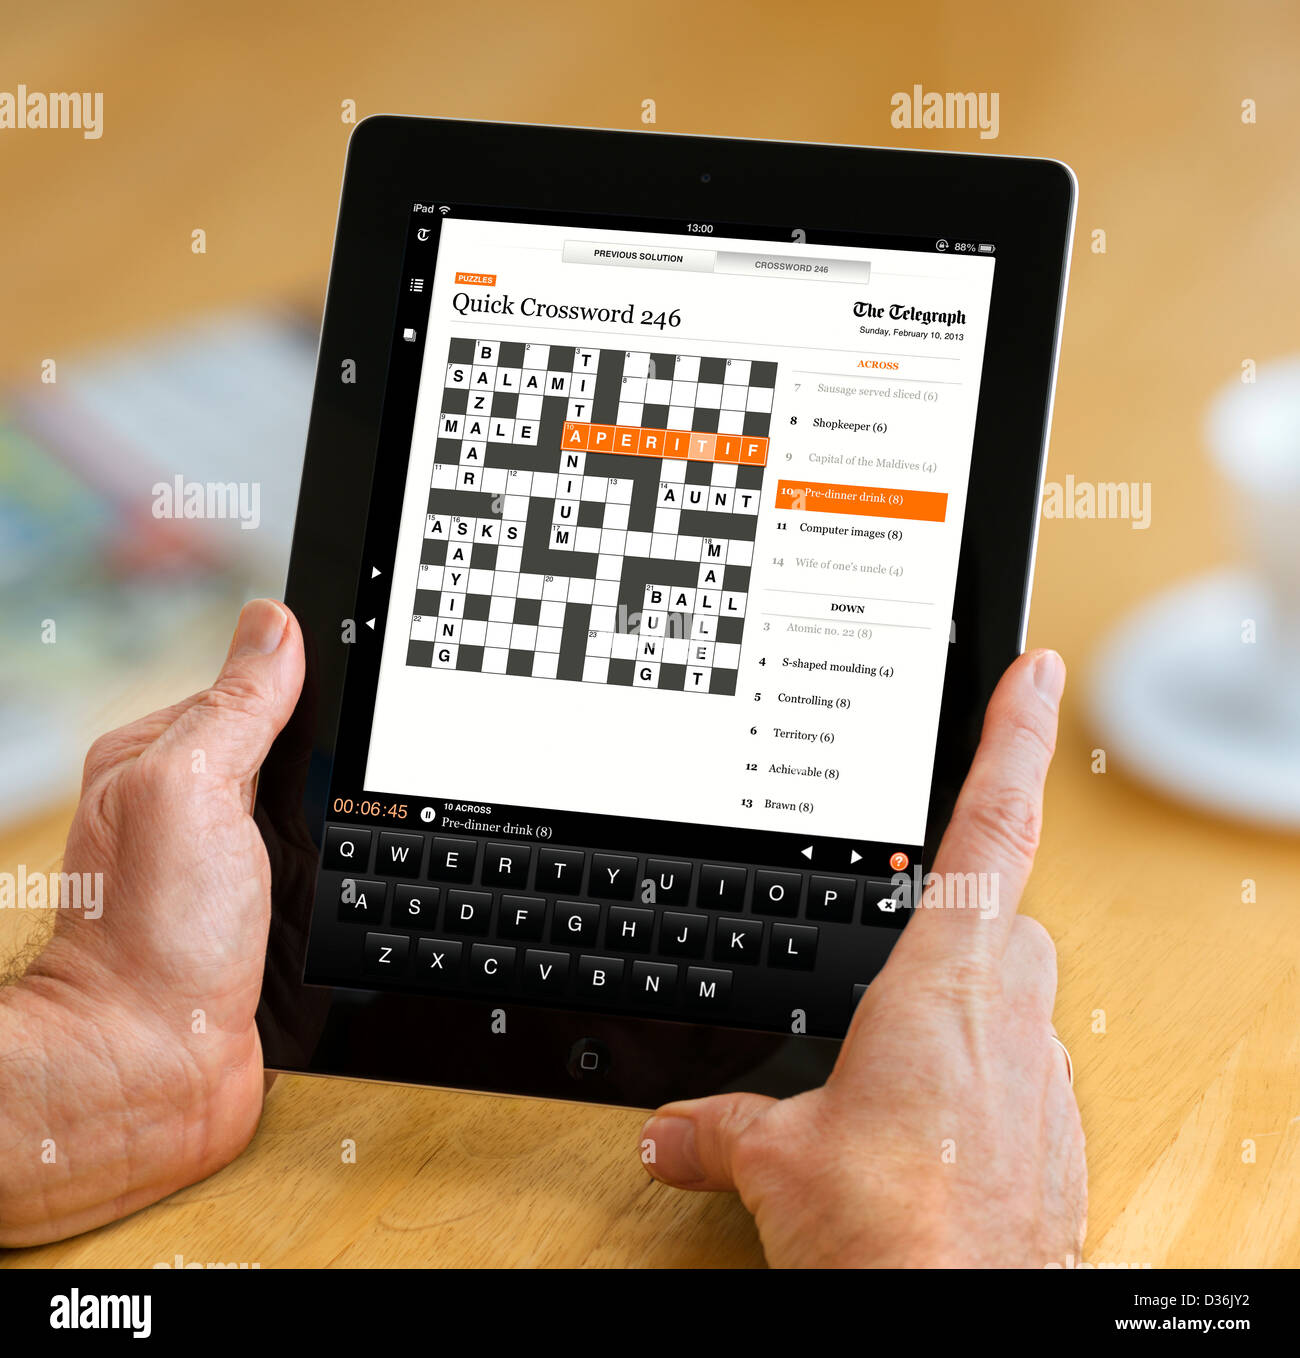 Tun Sie das Kreuzworträtsel in der Telegraph-app auf einem Apple iPad 4. Generation Retina Display Tablettcomputer Stockfoto